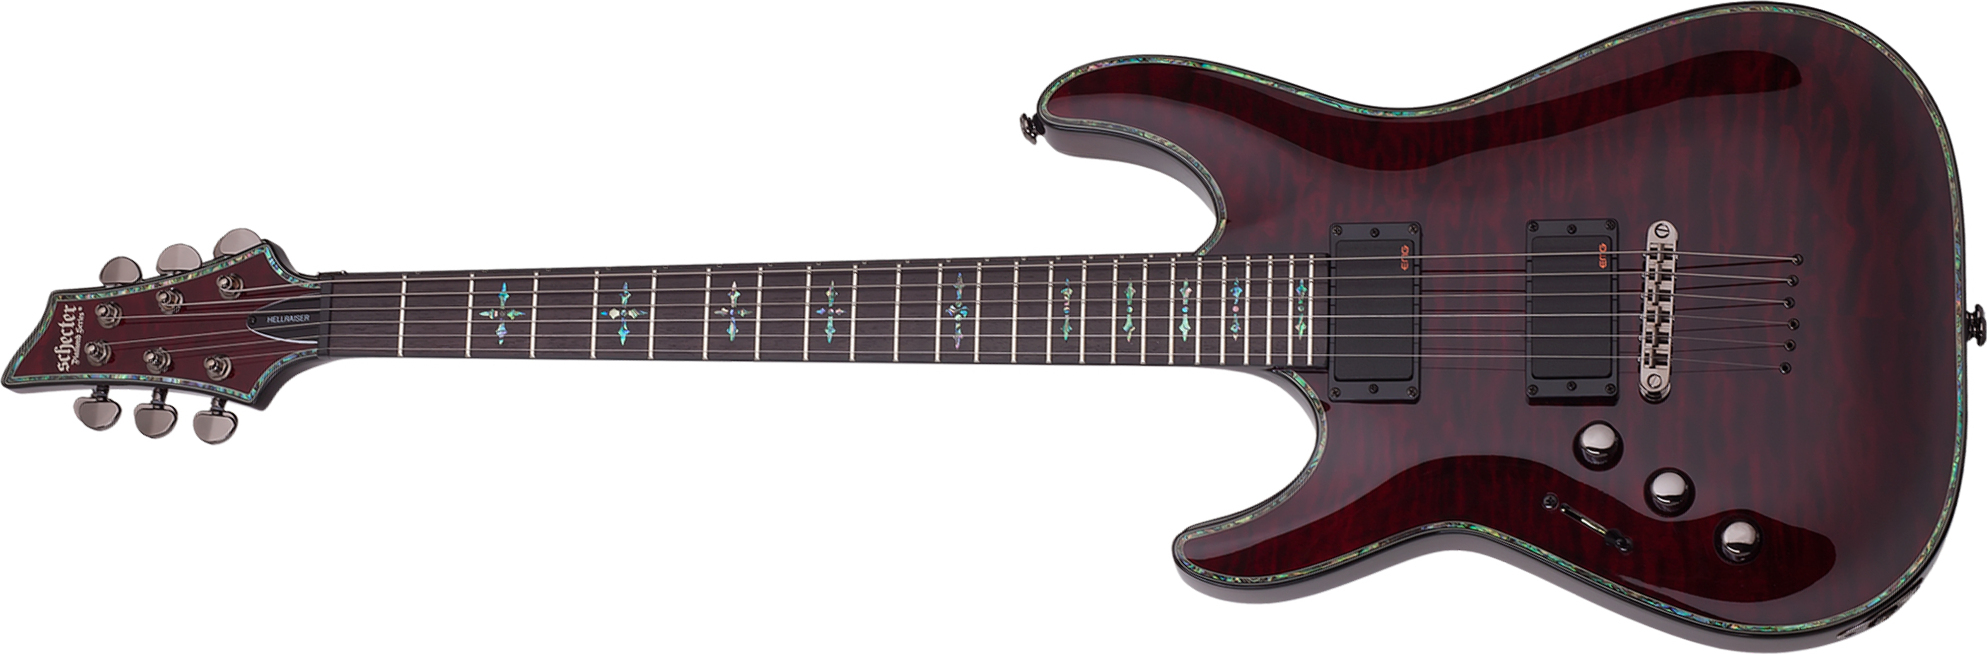 Schecter C-1 Hellraiser Lh Gaucher 2h Emg Ht Rw - Black Cherry - Linkshandige elektrische gitaar - Main picture